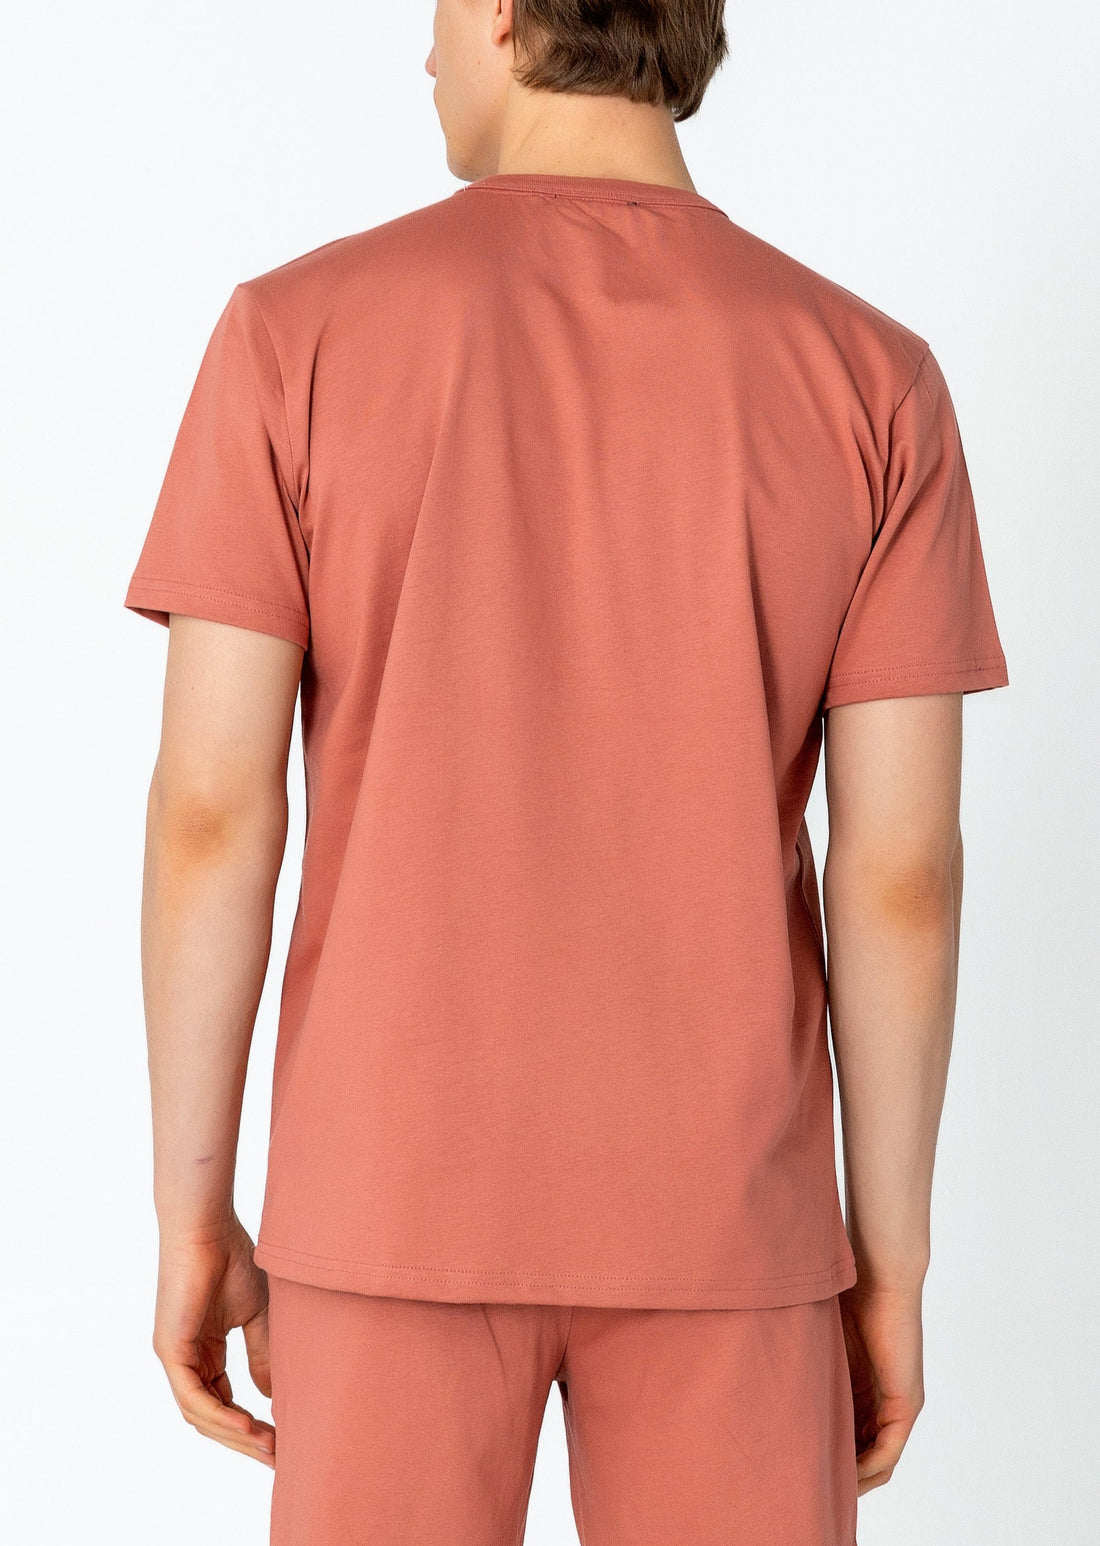 Lightweight Cotton T-shirt - Rose